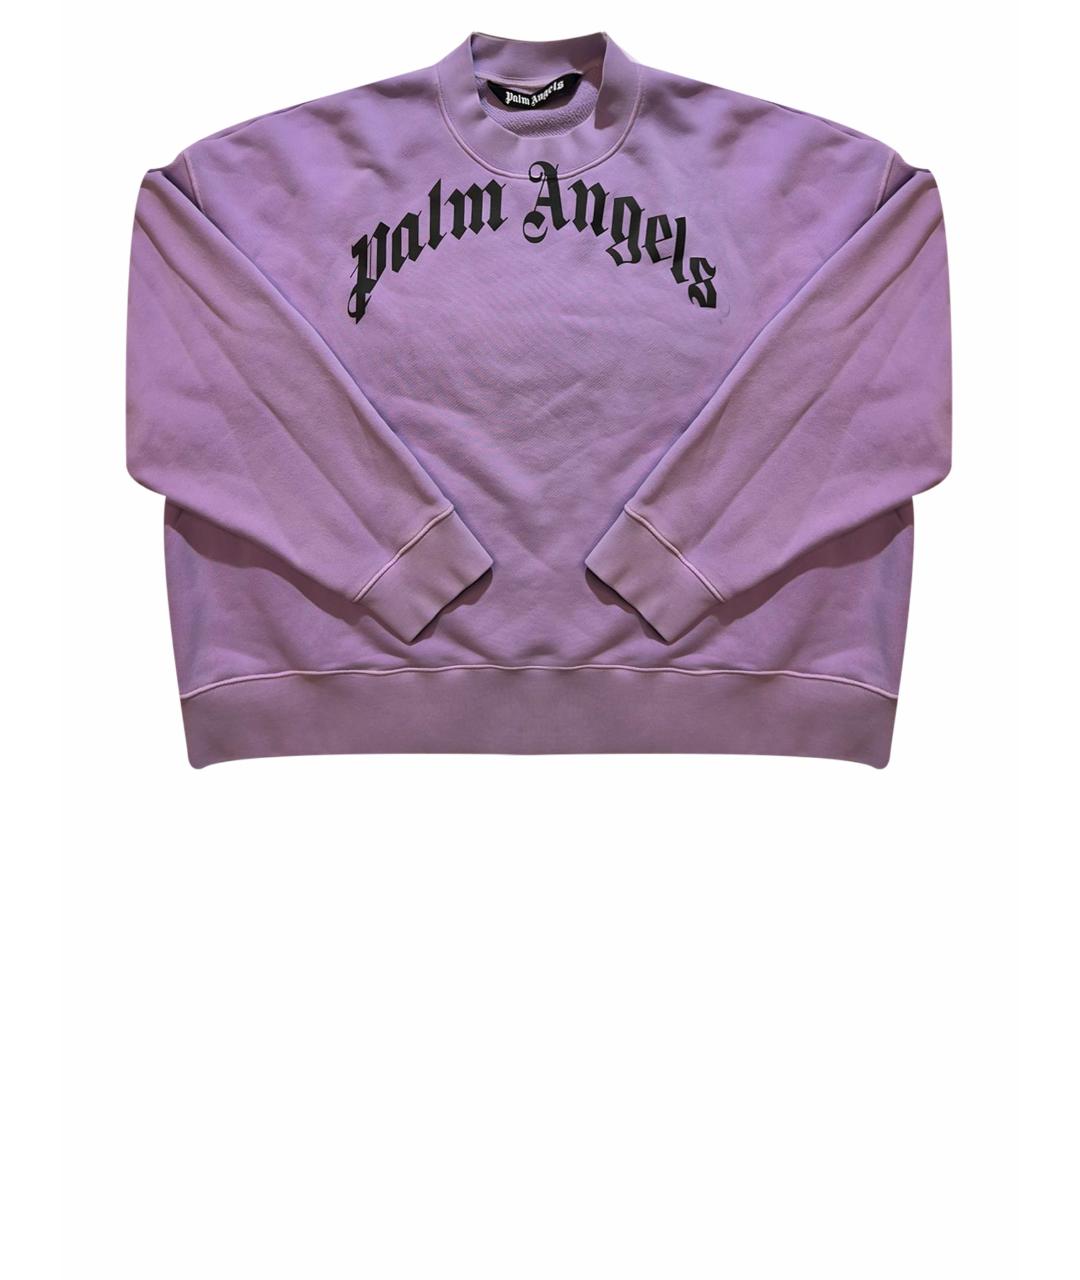 PALM ANGELS Мульти хлопковый джемпер / свитер, фото 1